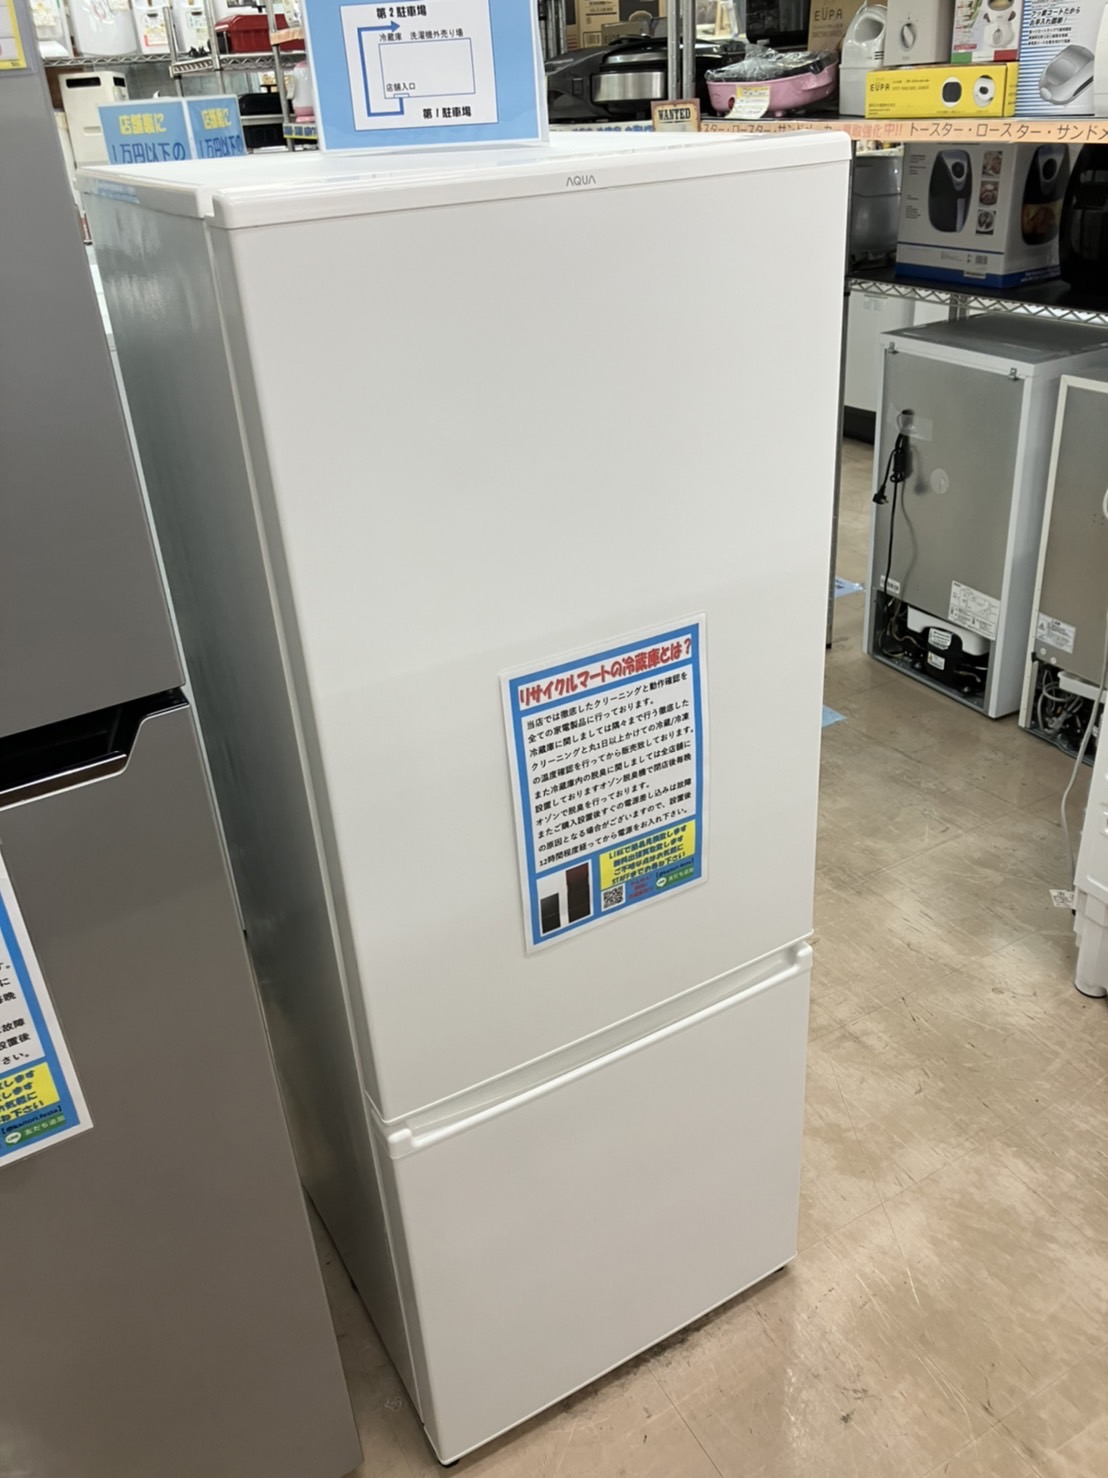 【AQUA アクア 201L 冷蔵庫 2020年製 AQR-20K 】を買取致しました！⭐福岡市 早良区 リサイクルショップ リサイクルマート原店⭐ - リサイクルマートは現在冷蔵庫の買取、家具の買取強化中です！お気軽にお問い合わせください。